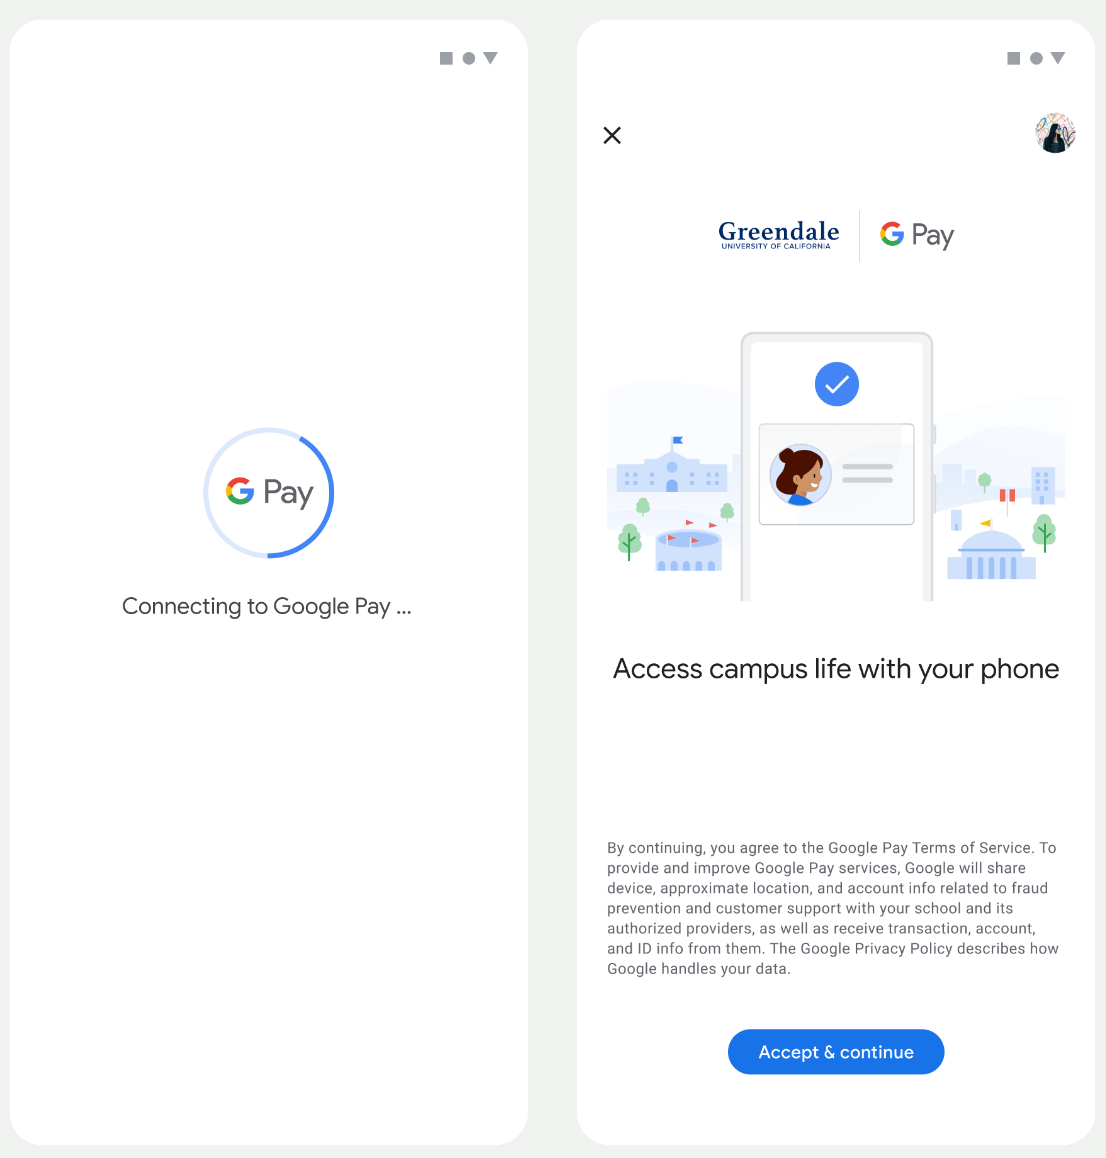 במסך הראשון, האפליקציה מתחברת ל-Google Wallet. במסך השני, המשתמש מאשר את התנאים וההגבלות וממשיך.